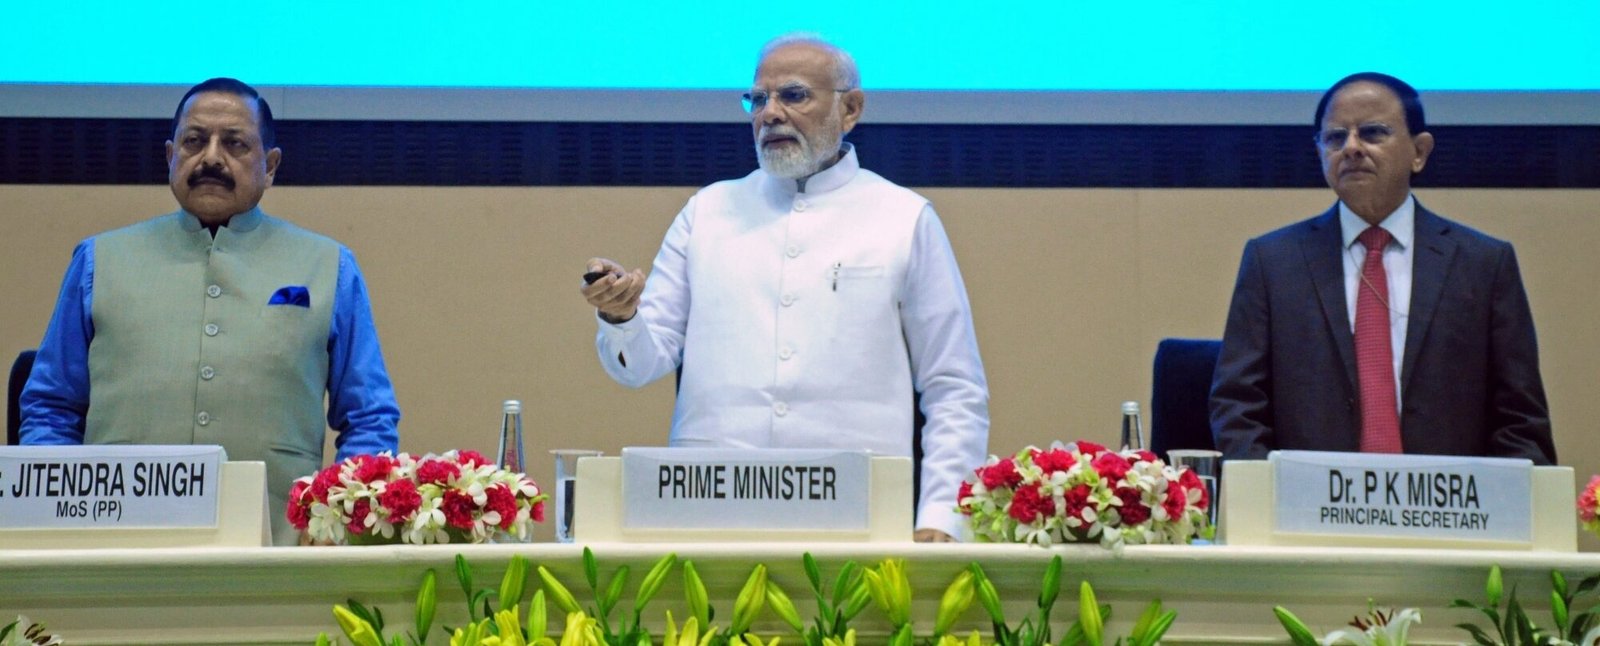 PM Modi launches the Complaint Management System portal